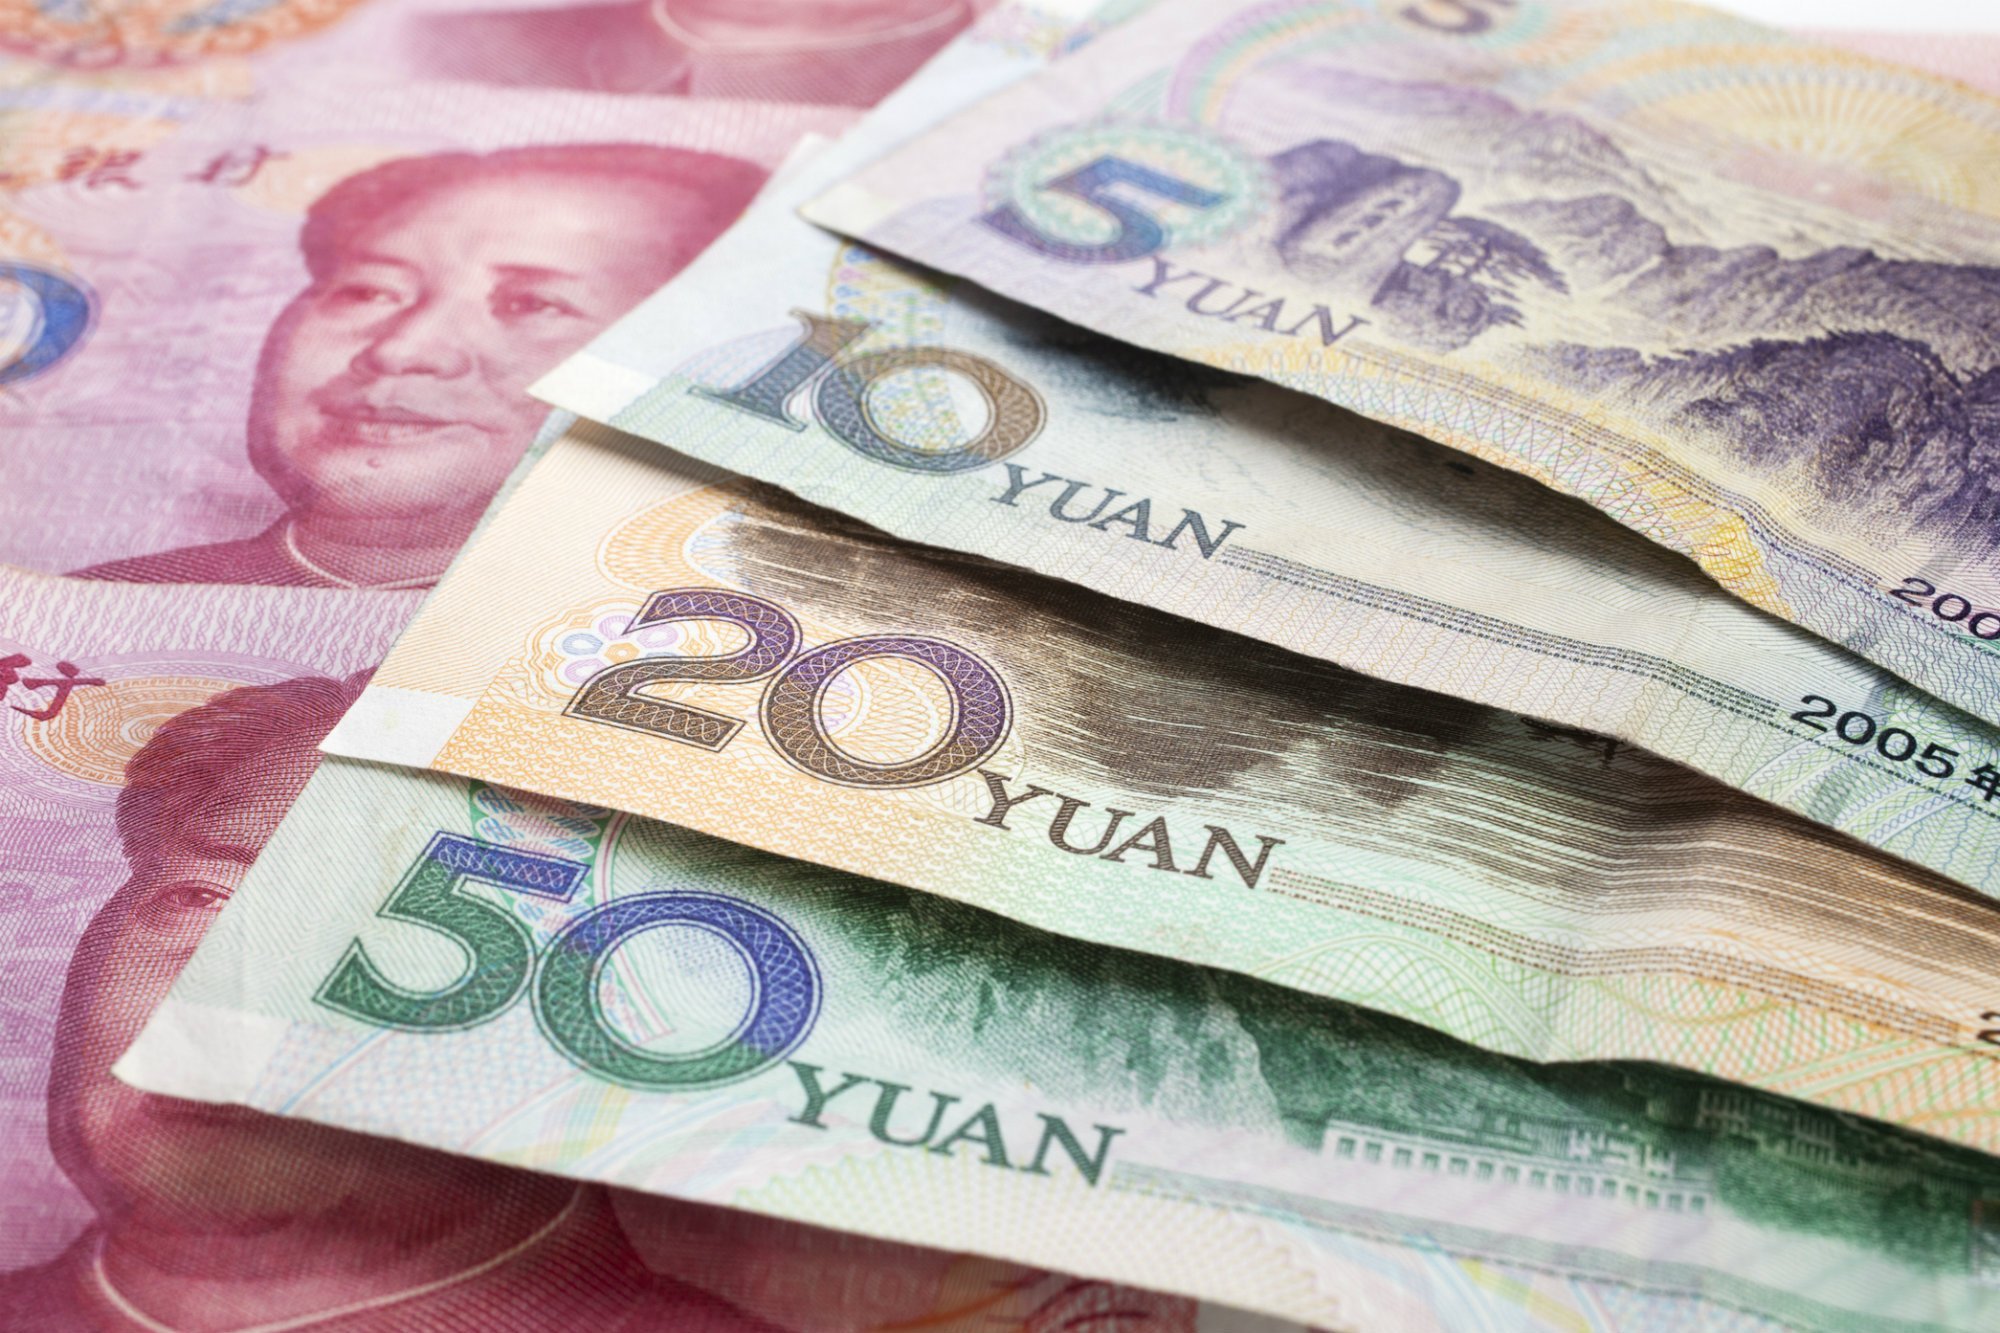 Có cách nào dễ dàng quy đổi tiền Trung sang tiền Việt không?
